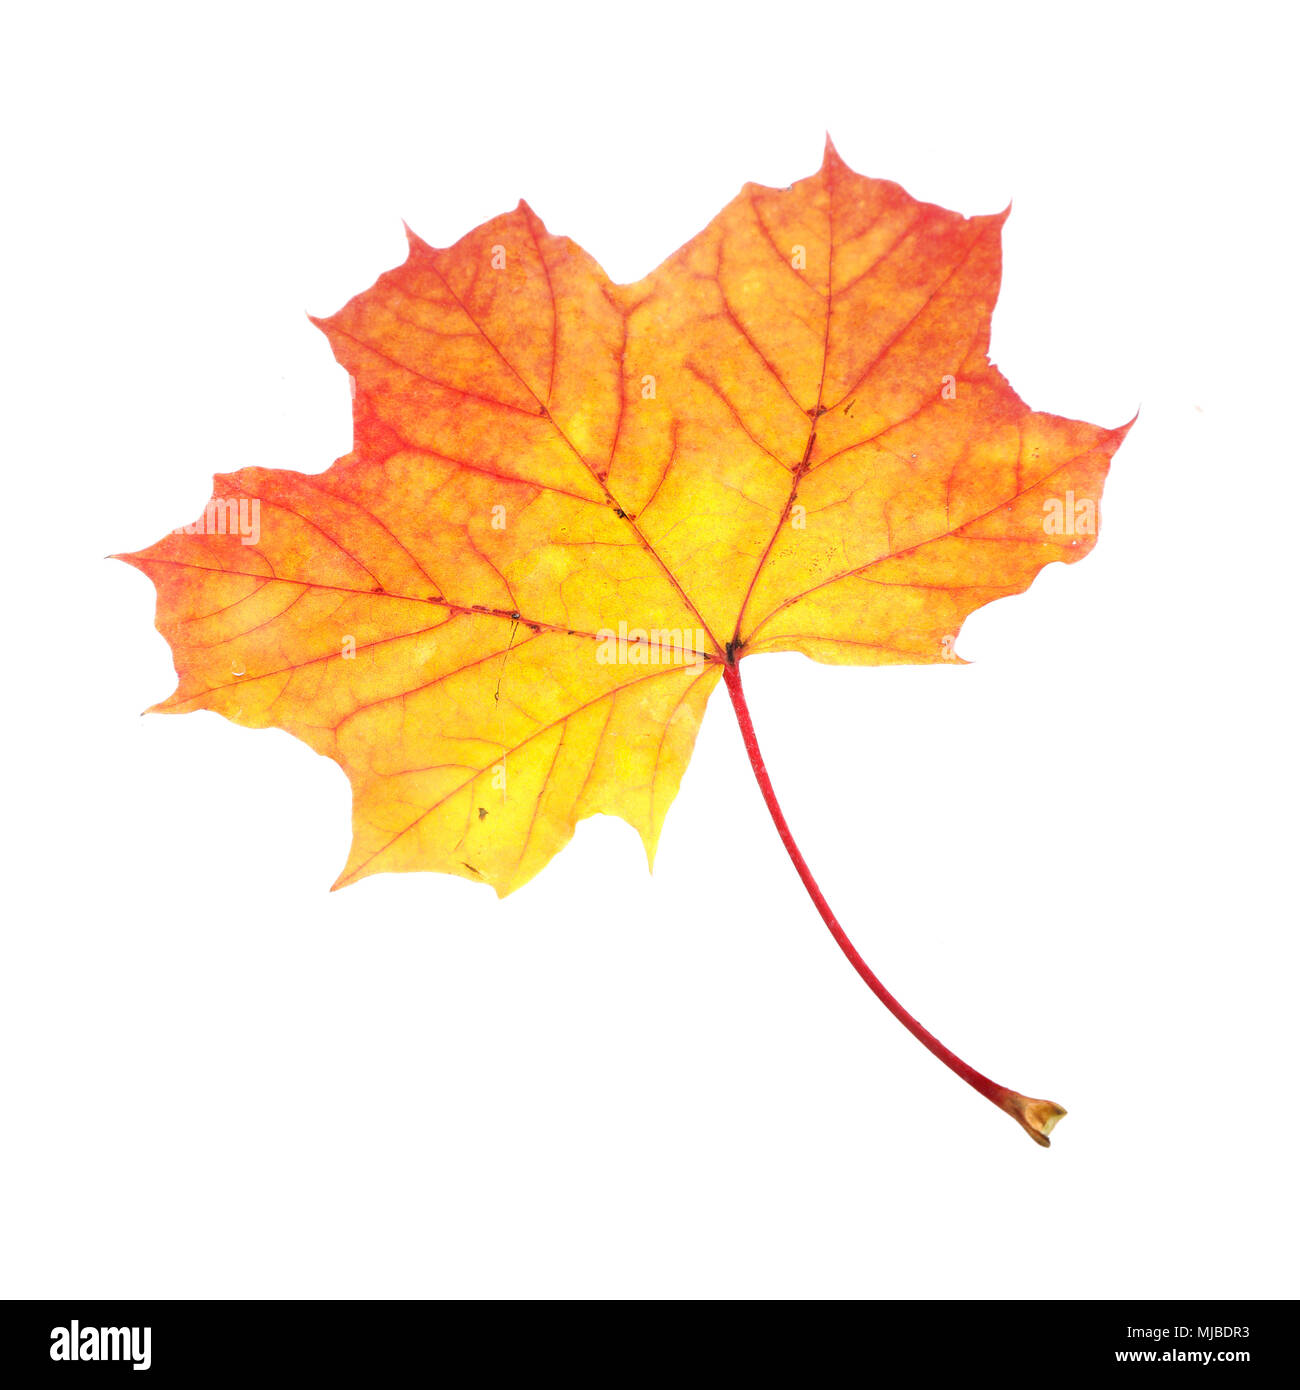 Eine Ahorn (Acer negundo) Blatt im Herbst Farben isoliert auf weißem backgrund. Stockfoto